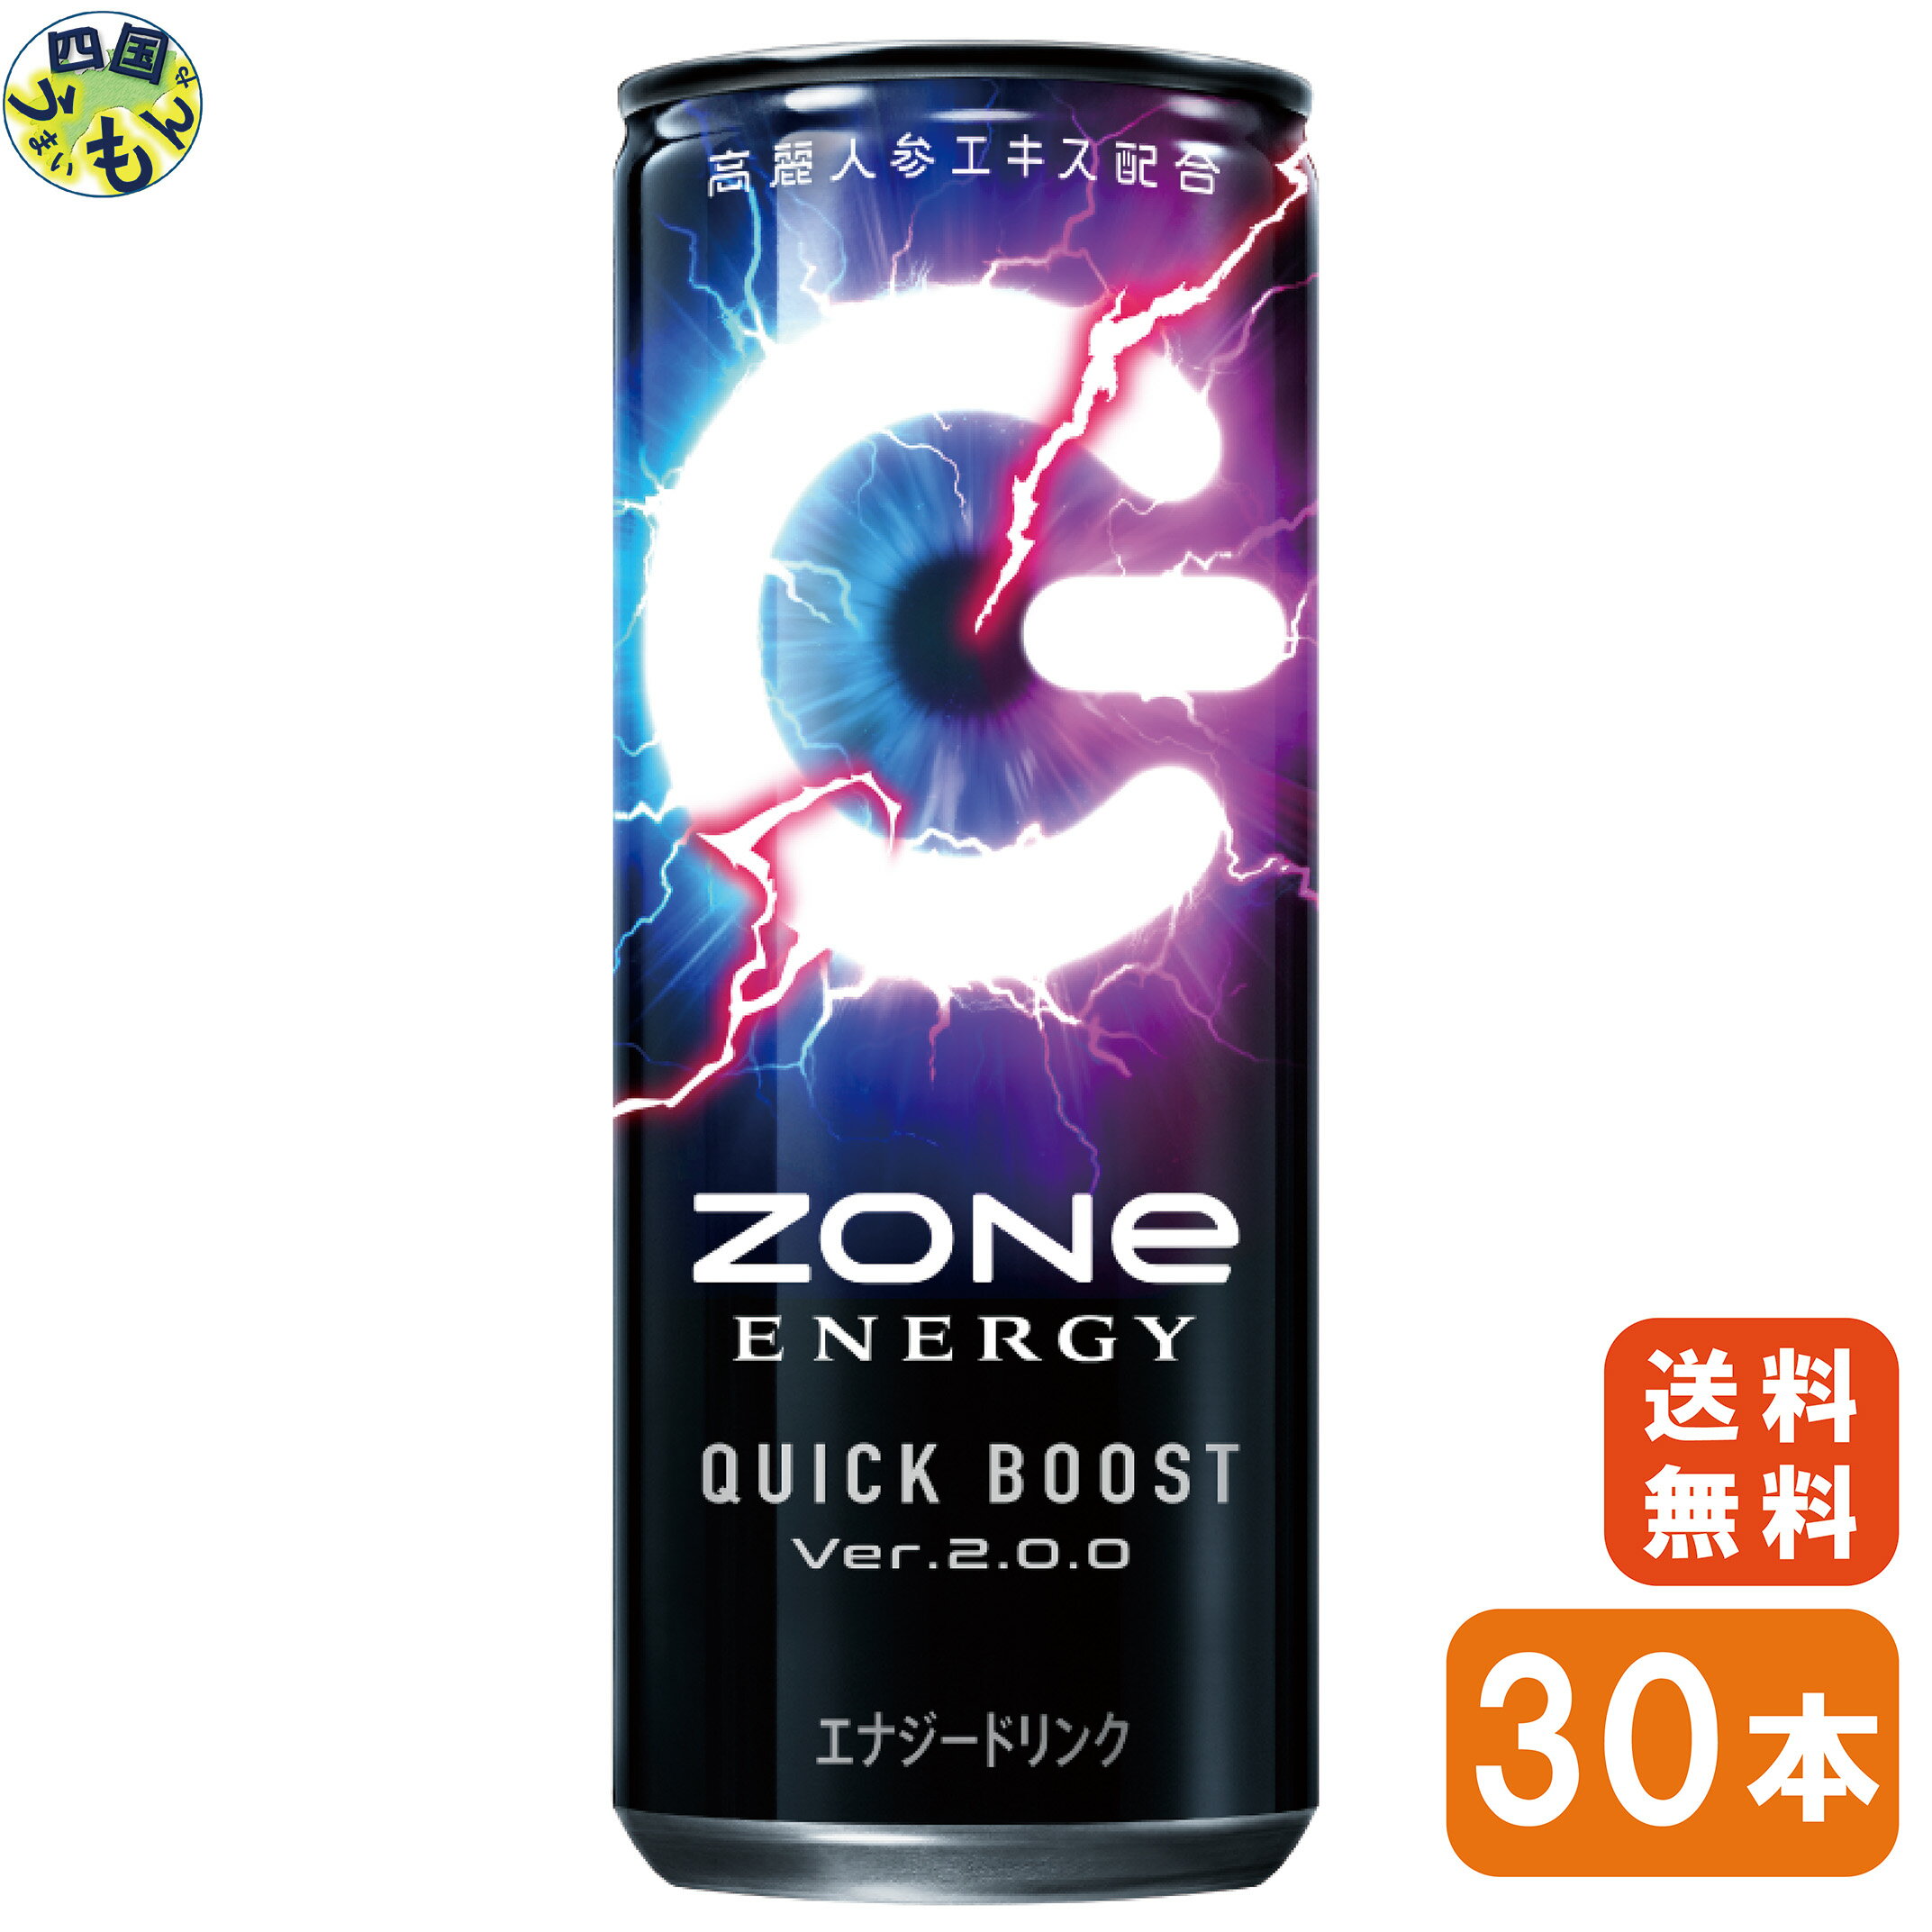 【送料無料】サントリー ZONe ENERGY QUICKBOOST Ver.2.0.0（240ml 缶×30本）1ケース エナジードリンク 缶 240ml ゾーン zone クイックブースト